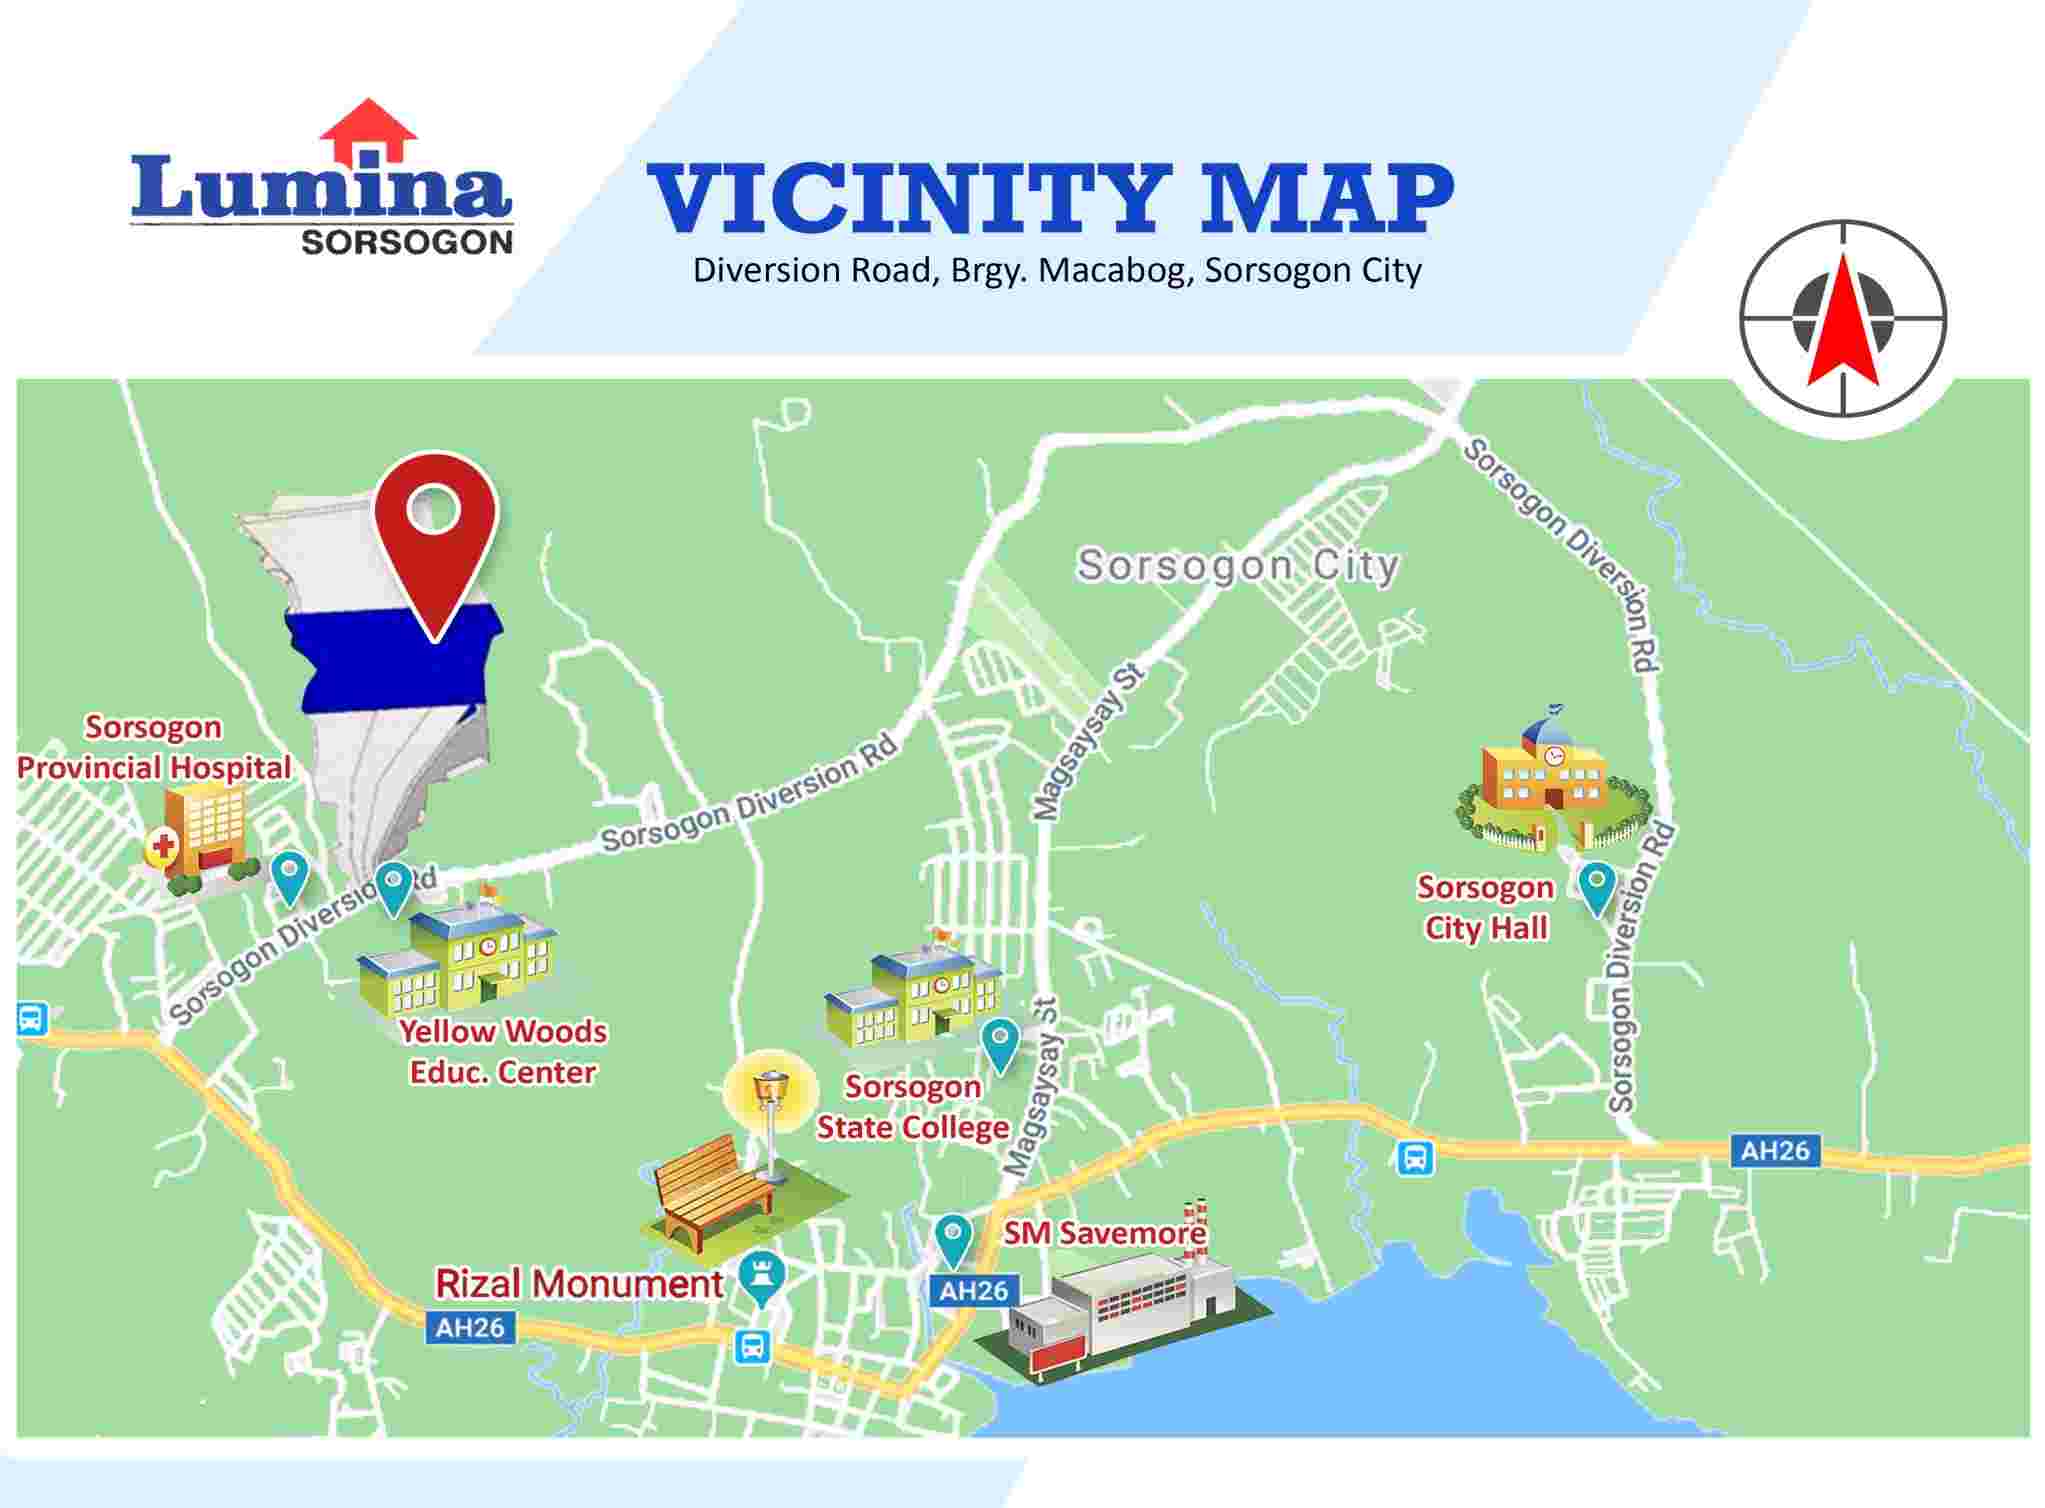 Vicinity-Map-1655184686.jpeg